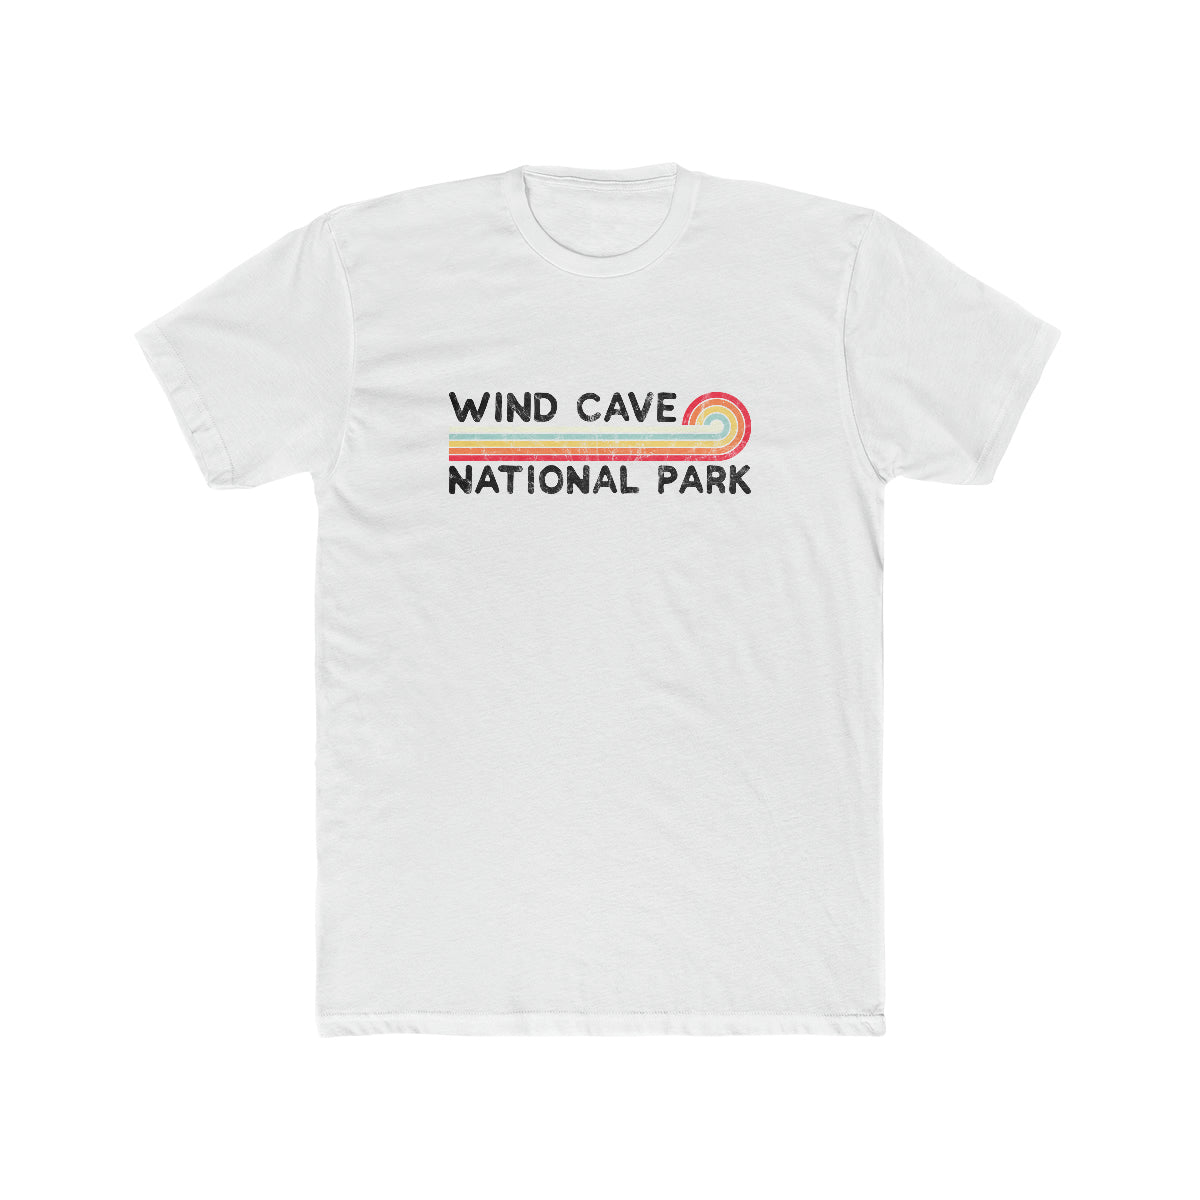 Wind Cave National Park T-Shirt - Vintage Stretched Sunrise